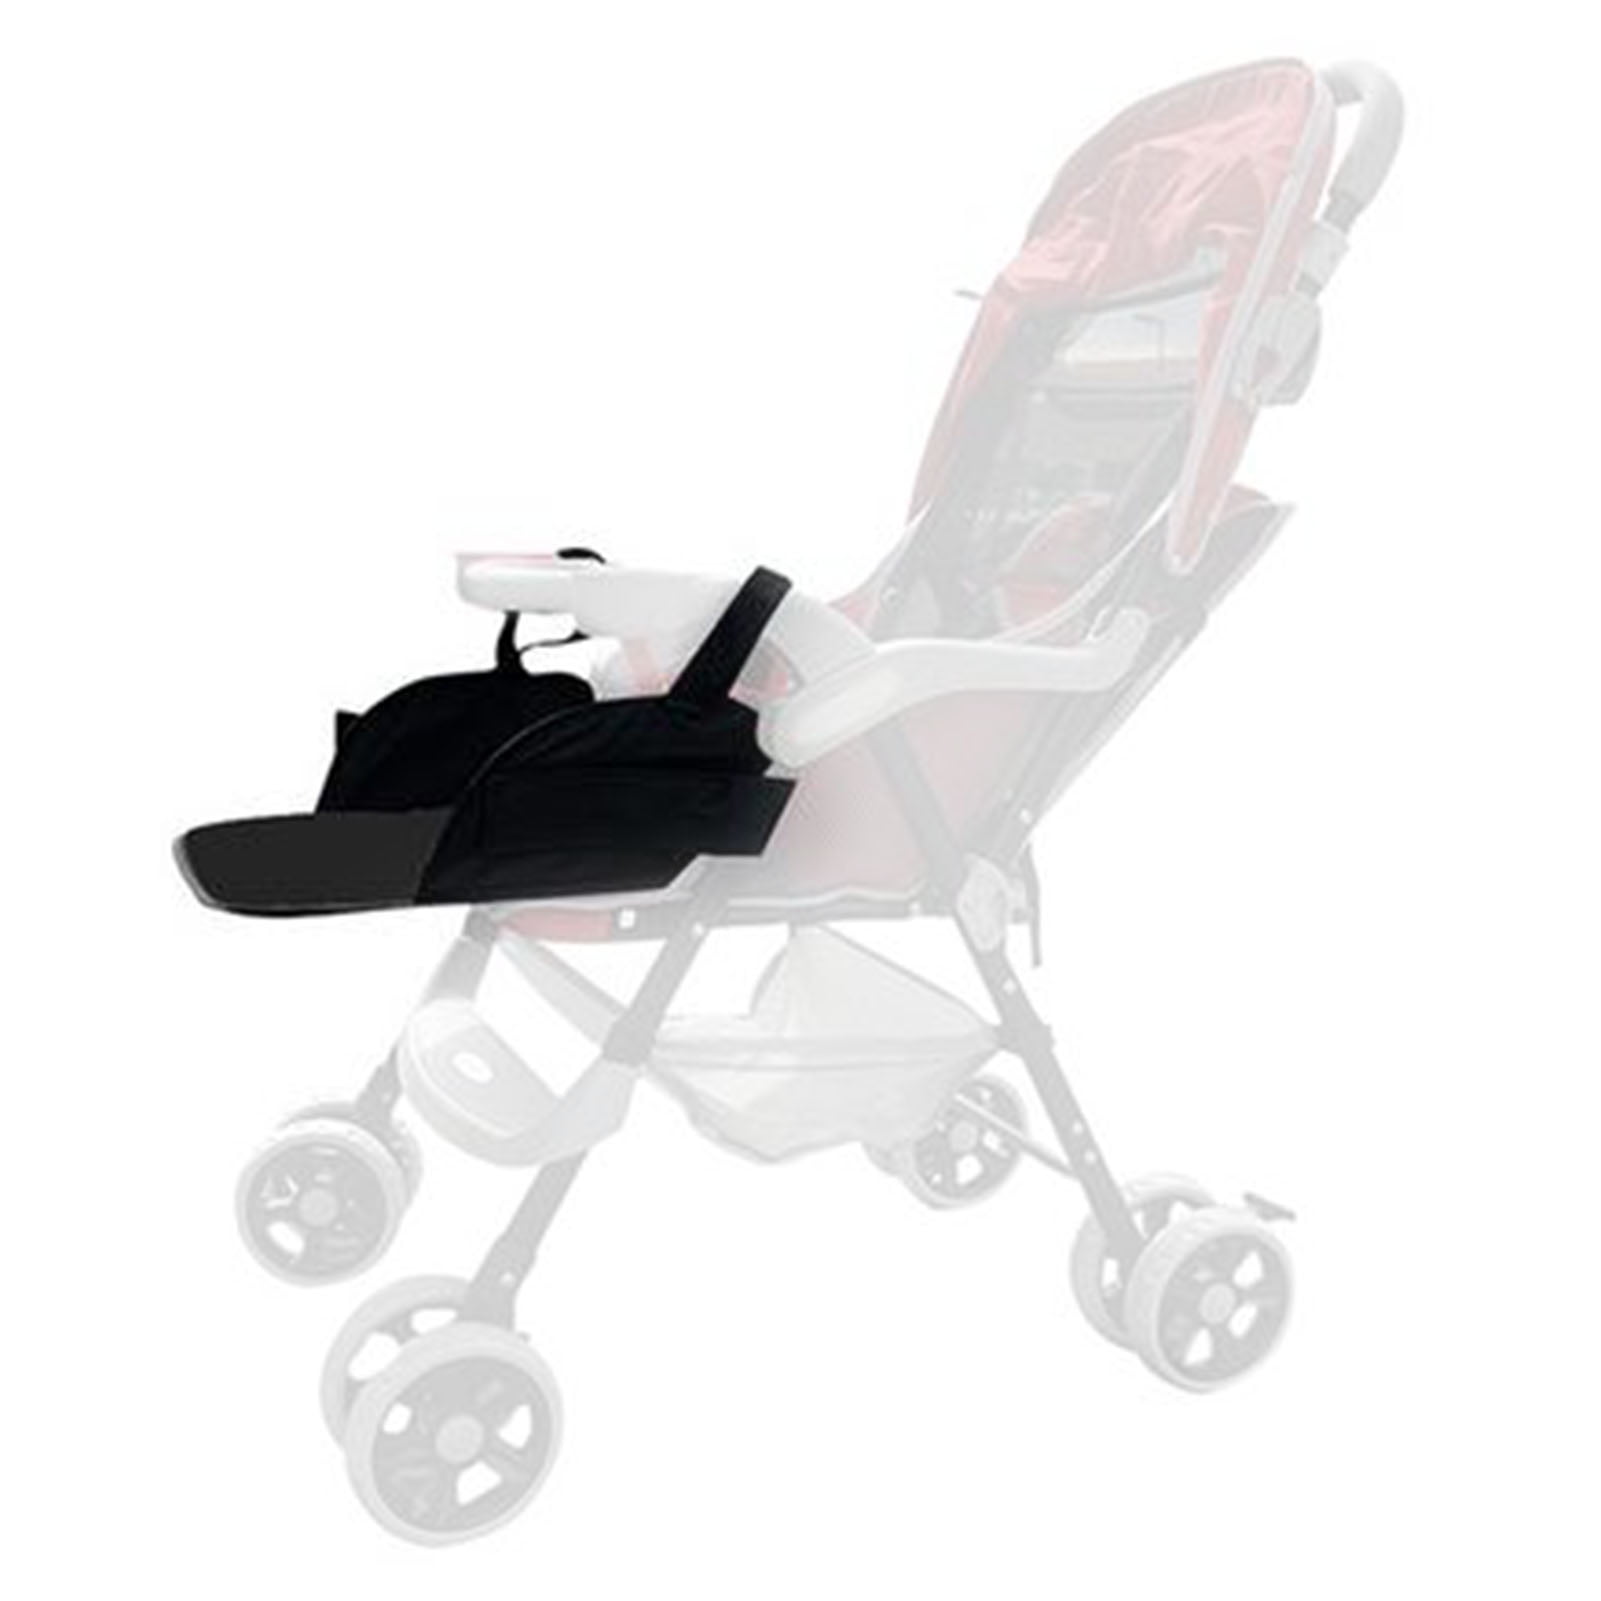 Doolland Child Car Safety Seat Stroller Footrest Fasten Support